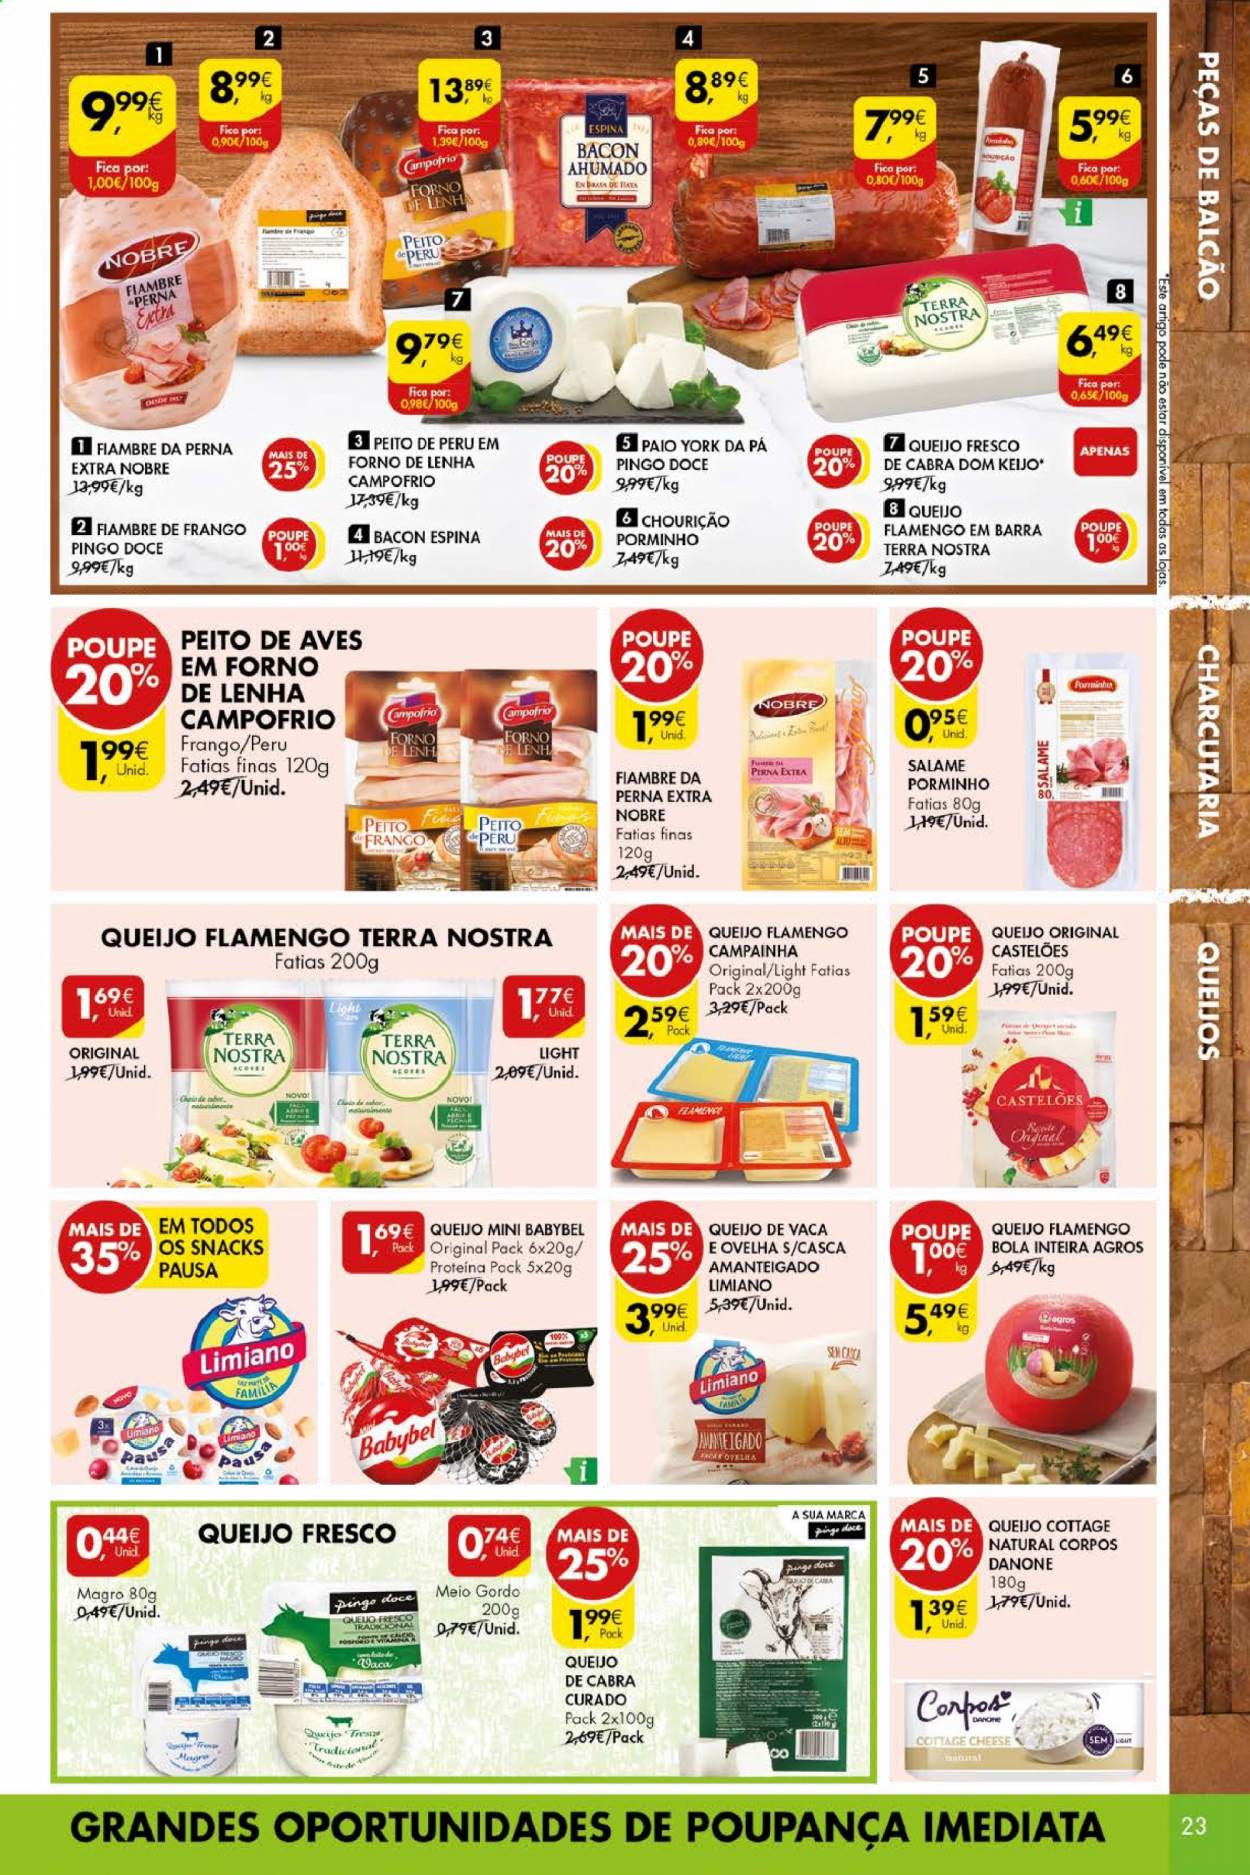 thumbnail - Folheto Pingo Doce - 23.3.2021 - 29.3.2021 - Produtos em promoção - peito de peru, perú, salame, bacon, Babybel, cottage, Danone. Página 23.